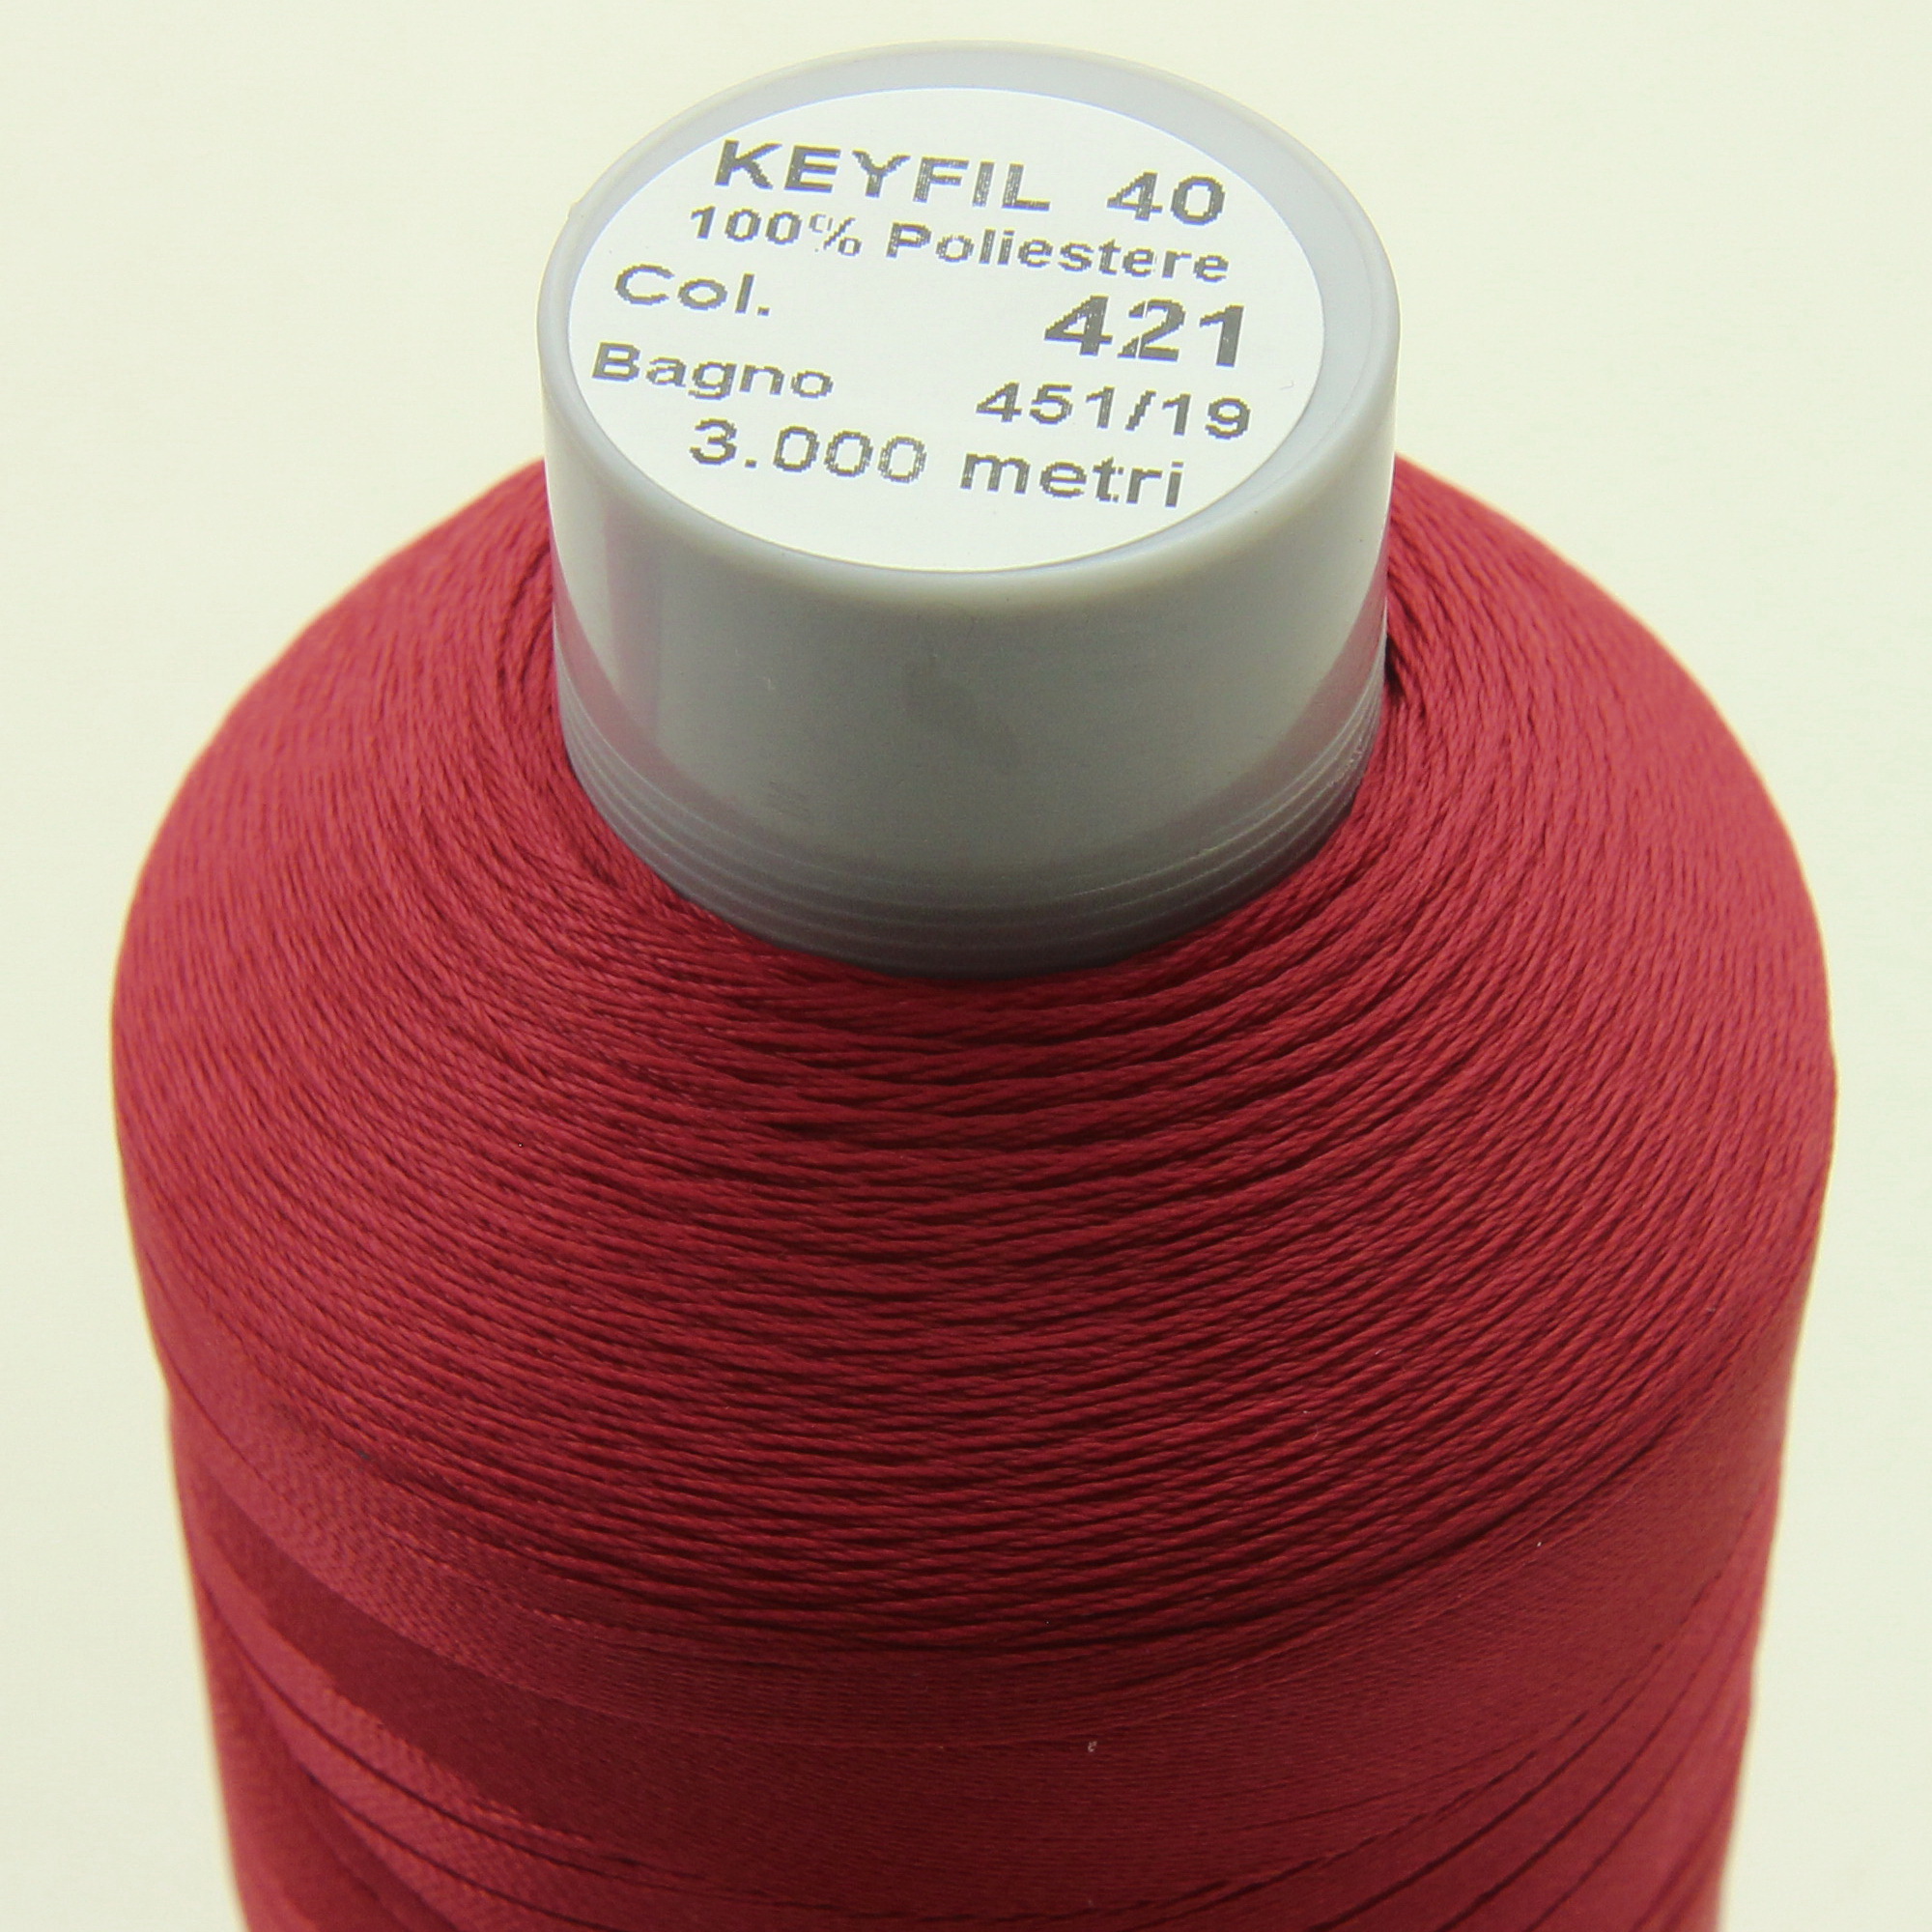 Нить KEYFIL (Италия) №40 цвет 421 темно-красный, длина 3000м. детальная фотка